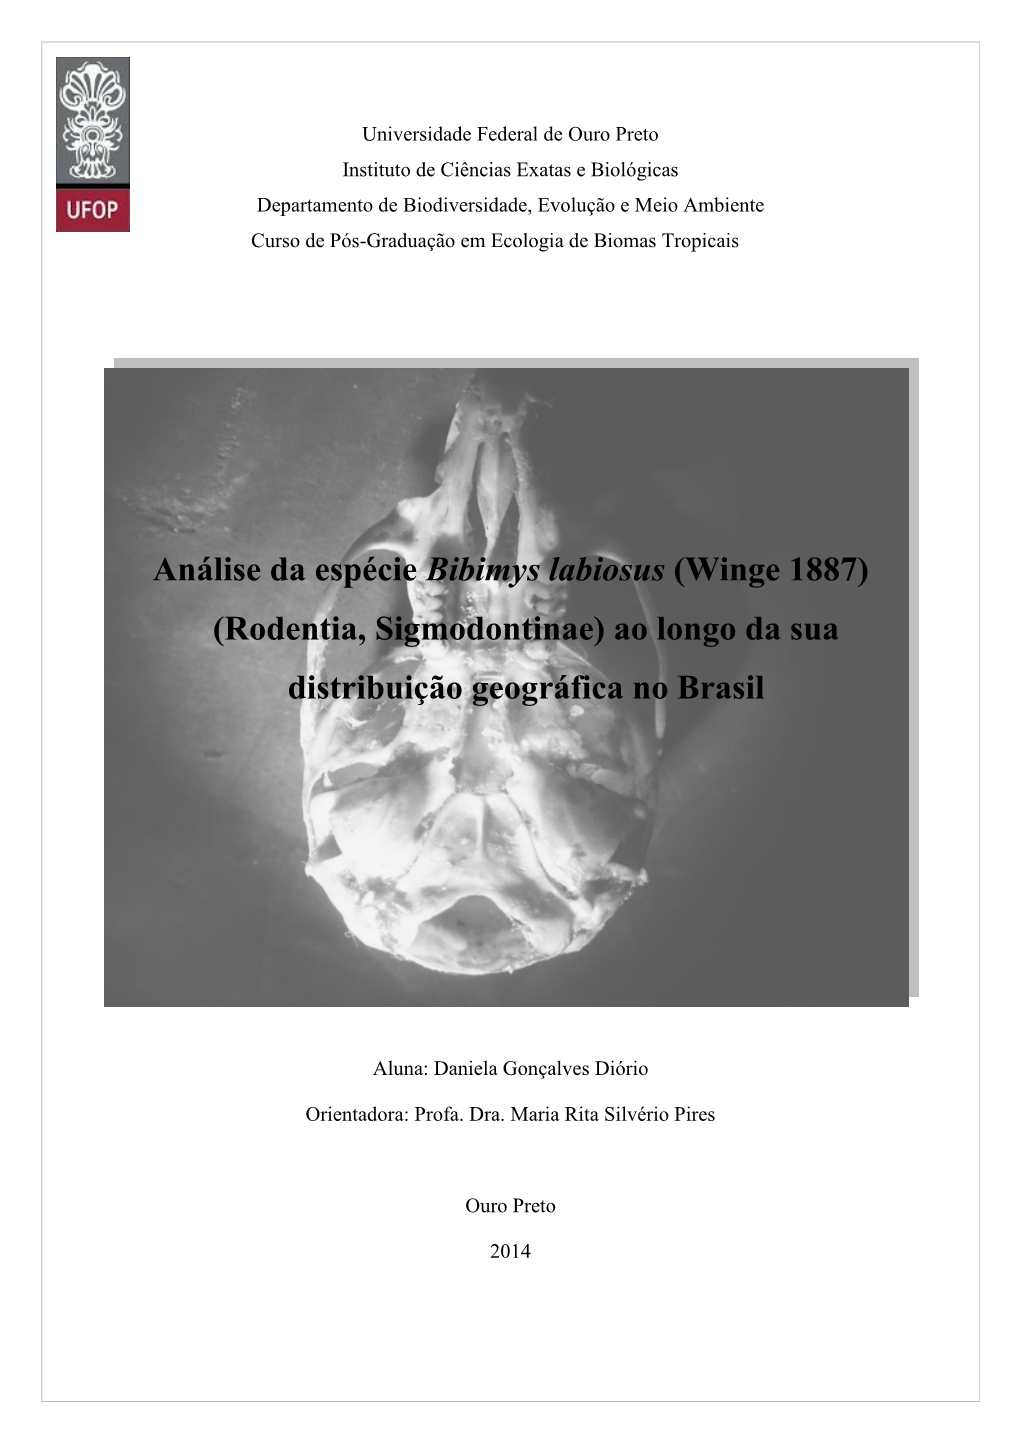 Análise Da Espécie Bibimys Labiosus (Winge 1887) (Rodentia, Sigmodontinae) Ao Longo Da Sua Distribuição Geográfica No Brasil